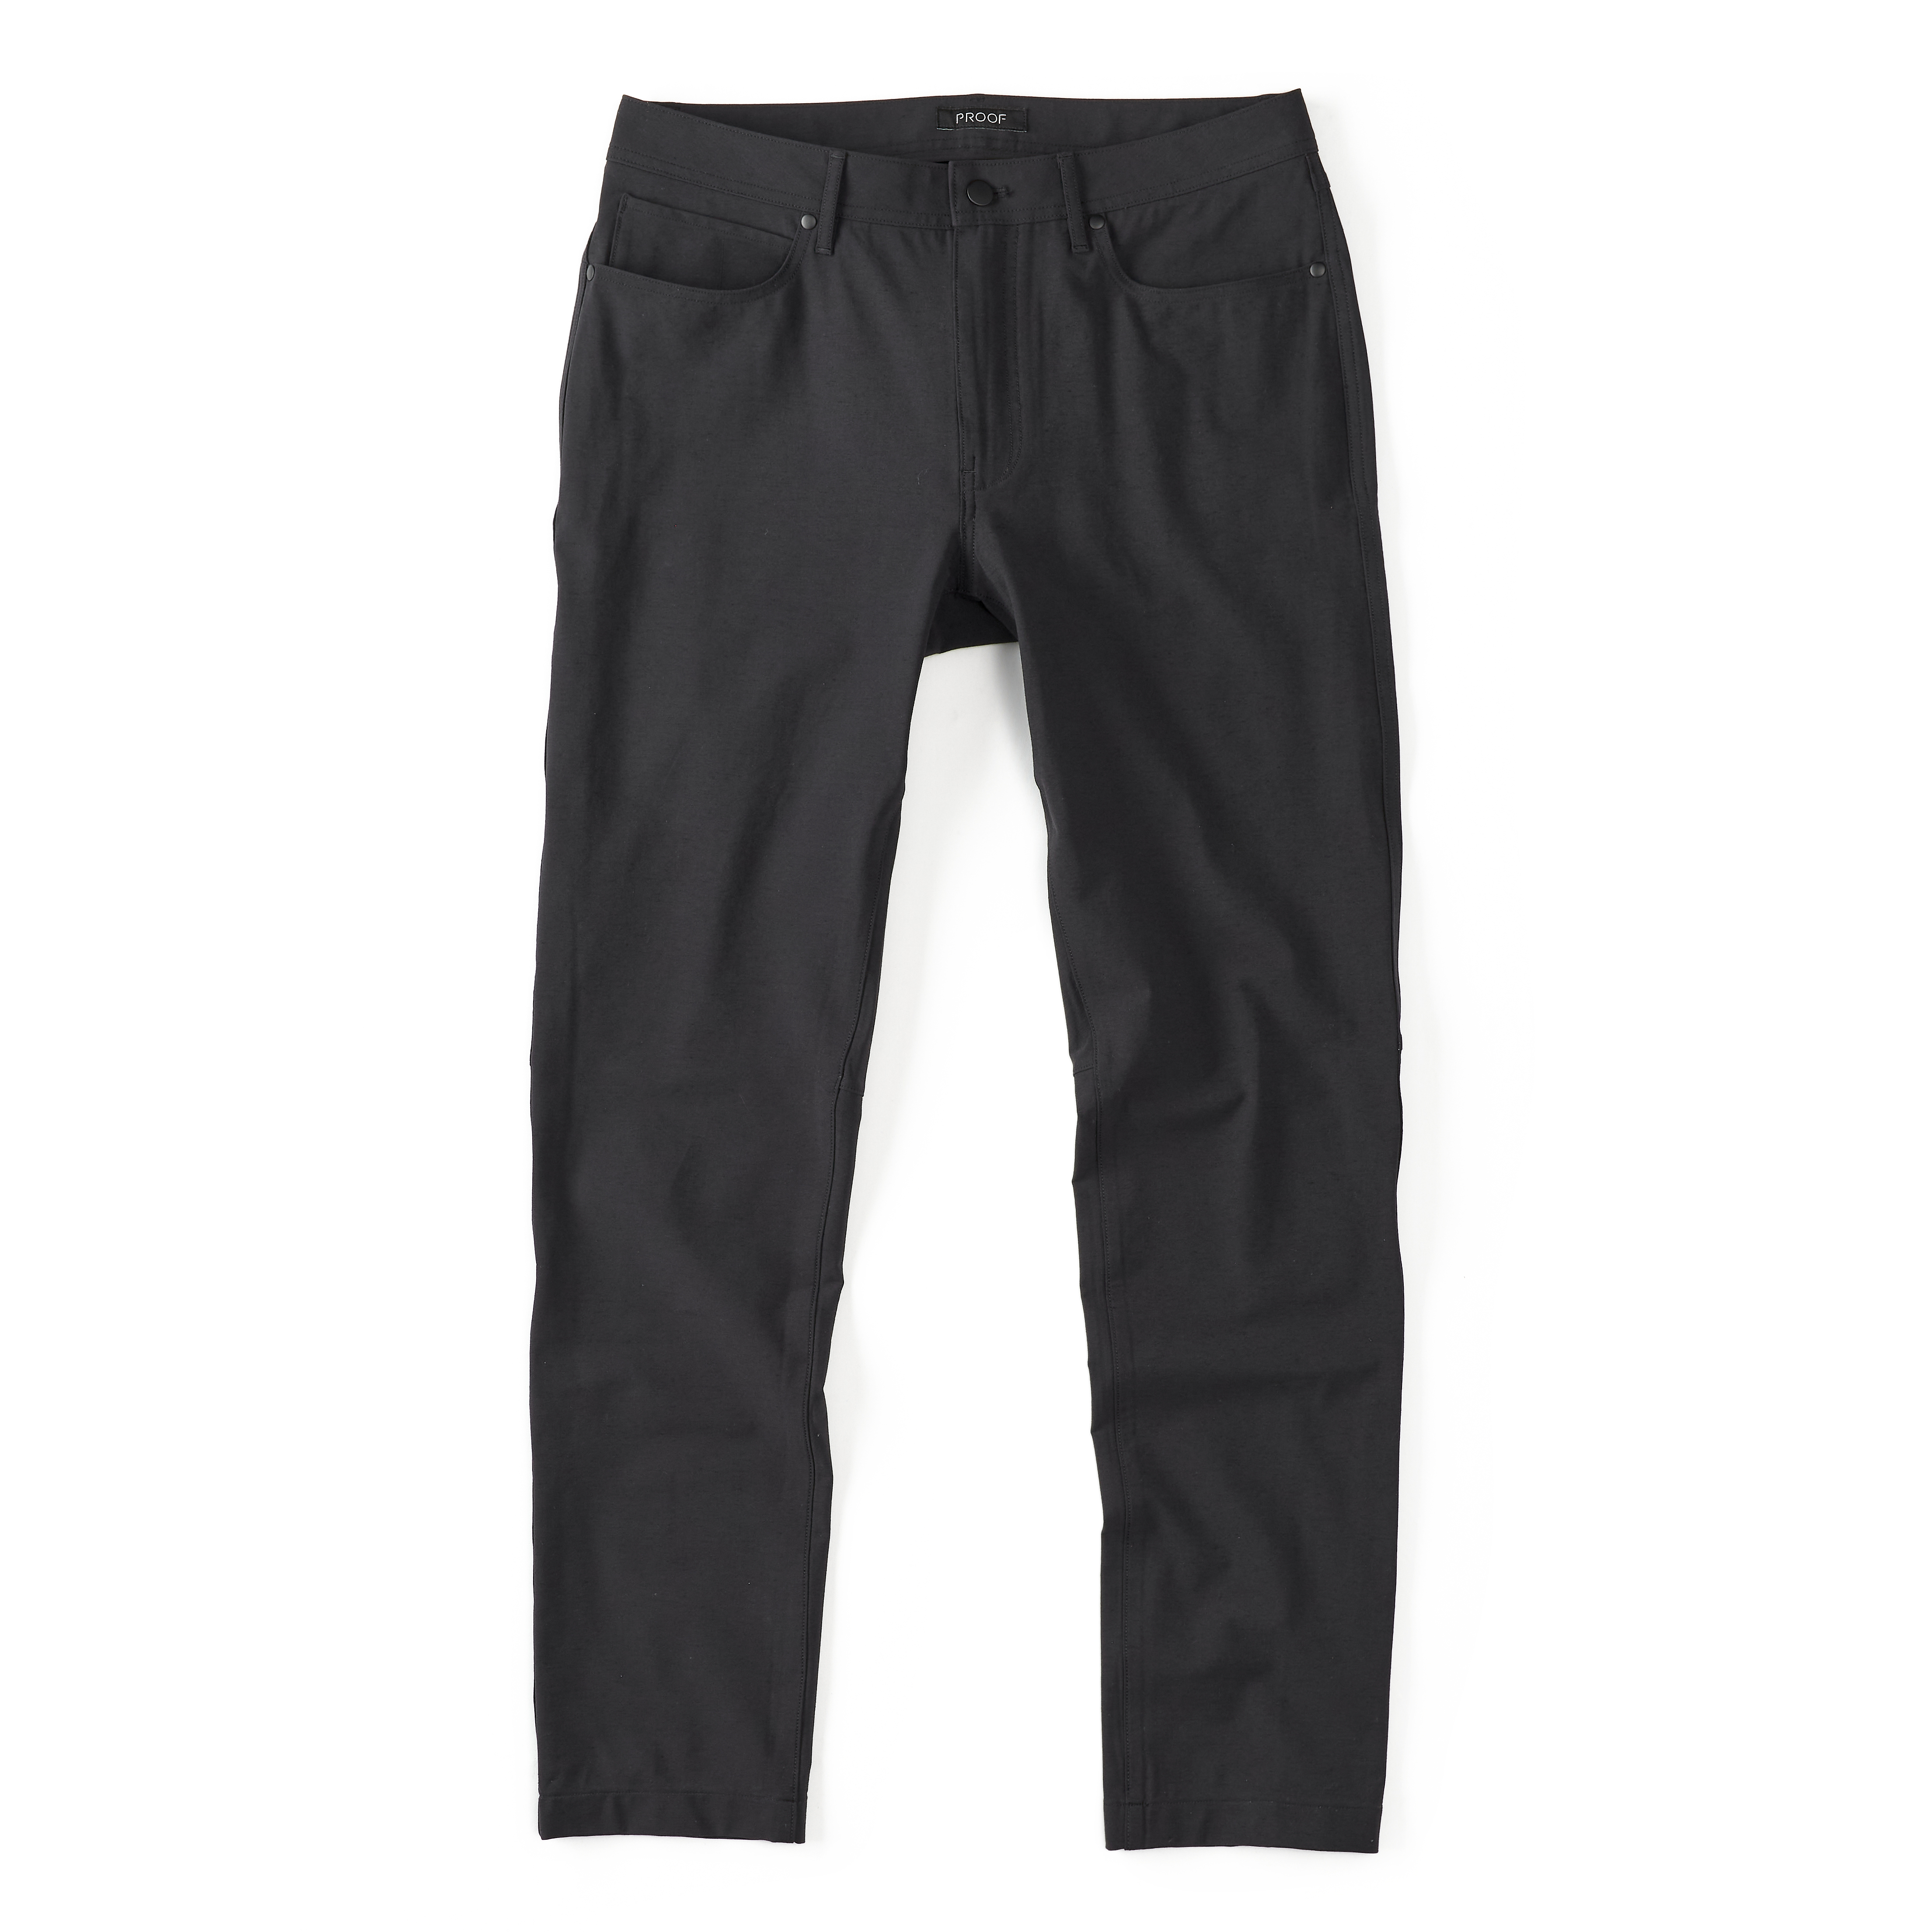 Buy Men's Dark Grey Convertible Travel Trousers Online | Decathlon